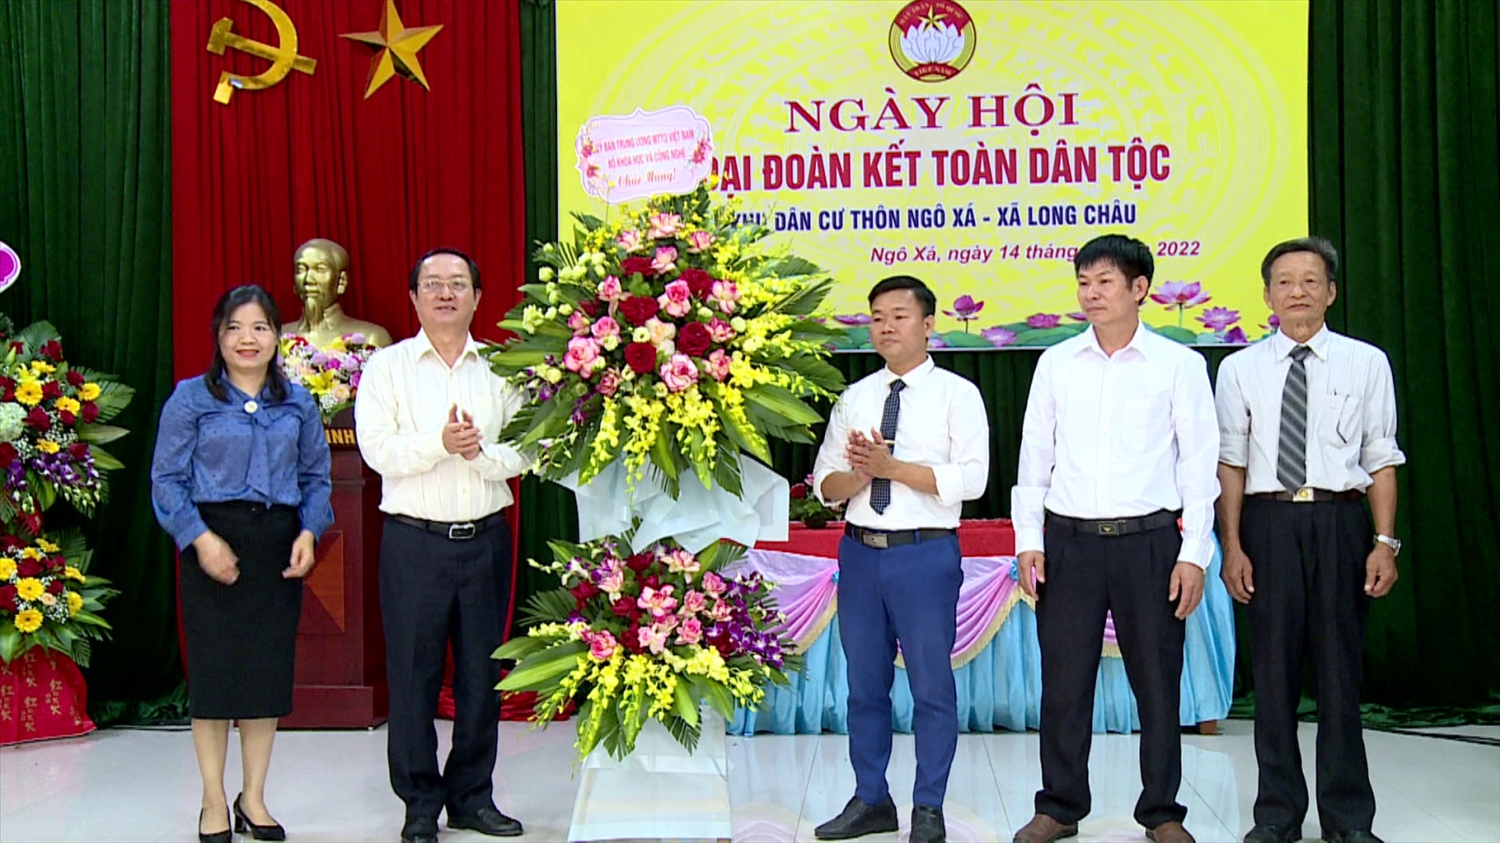 Bộ trưởng Bộ KH&CN Huỳnh Thành Đạt tặng hoa chúc mừng ngày hội Đại đoàn kết toàn dân tộc tại thôn Ngô Xá, xã Long Châu, huyện Yên Phong